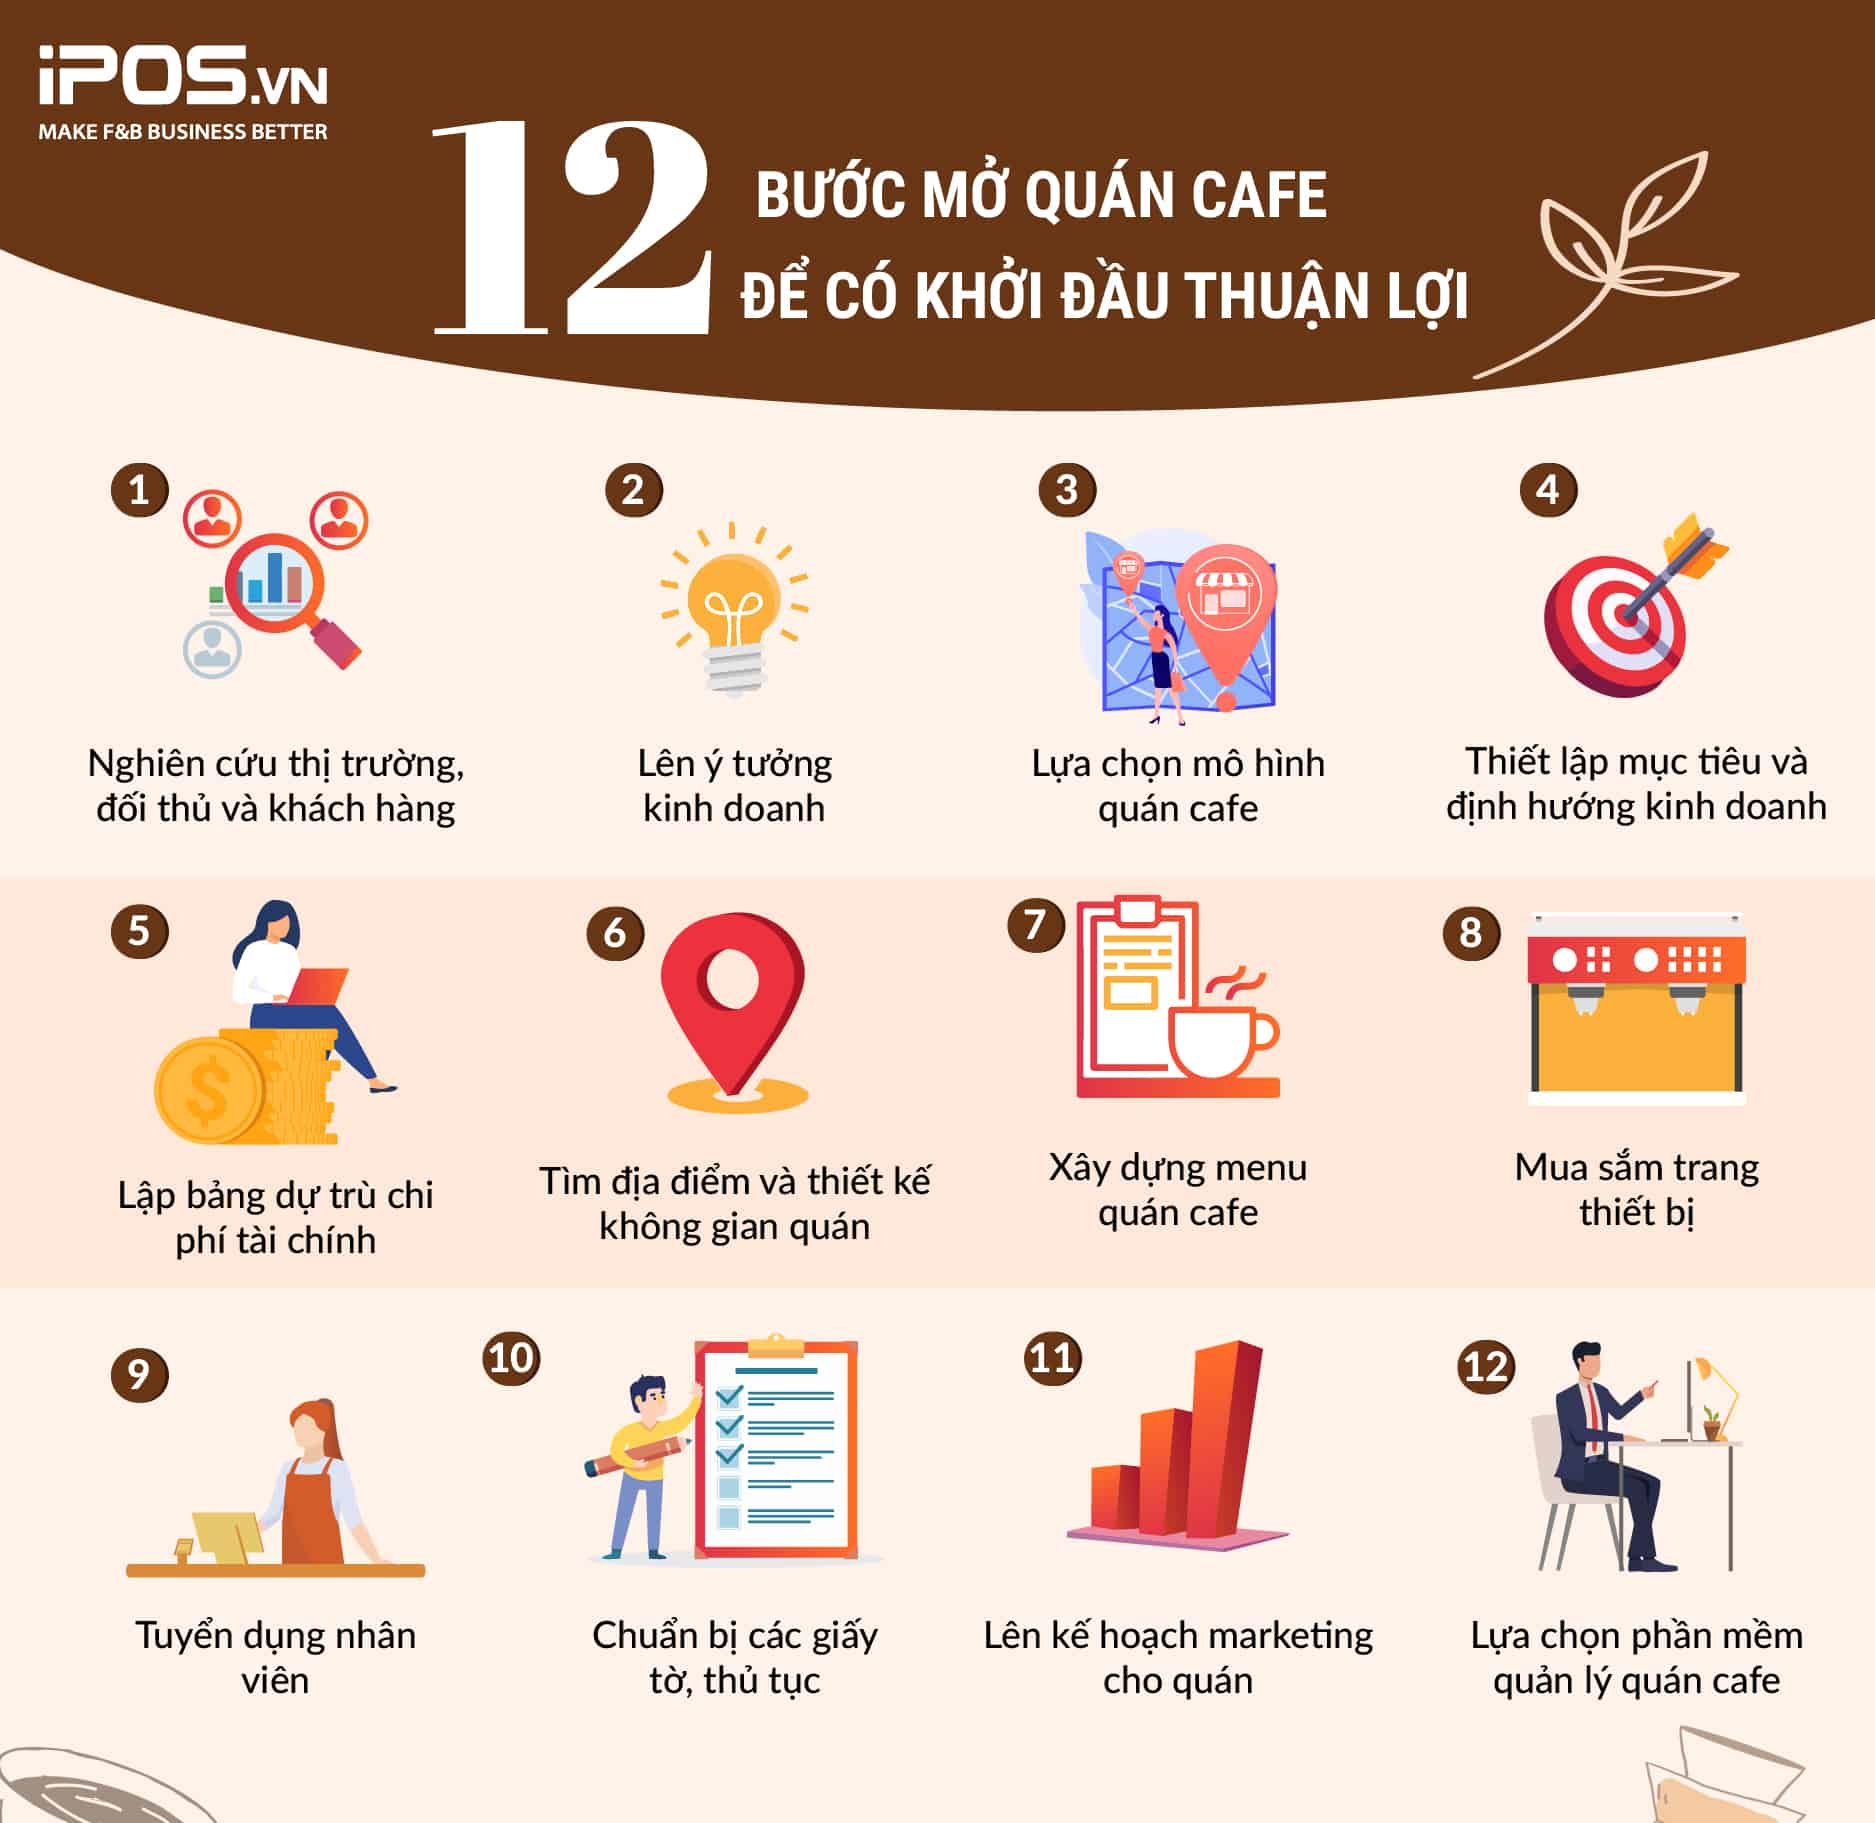 12 bước mở quán cafe để có khởi đầu thuận lợi và dễ dàng